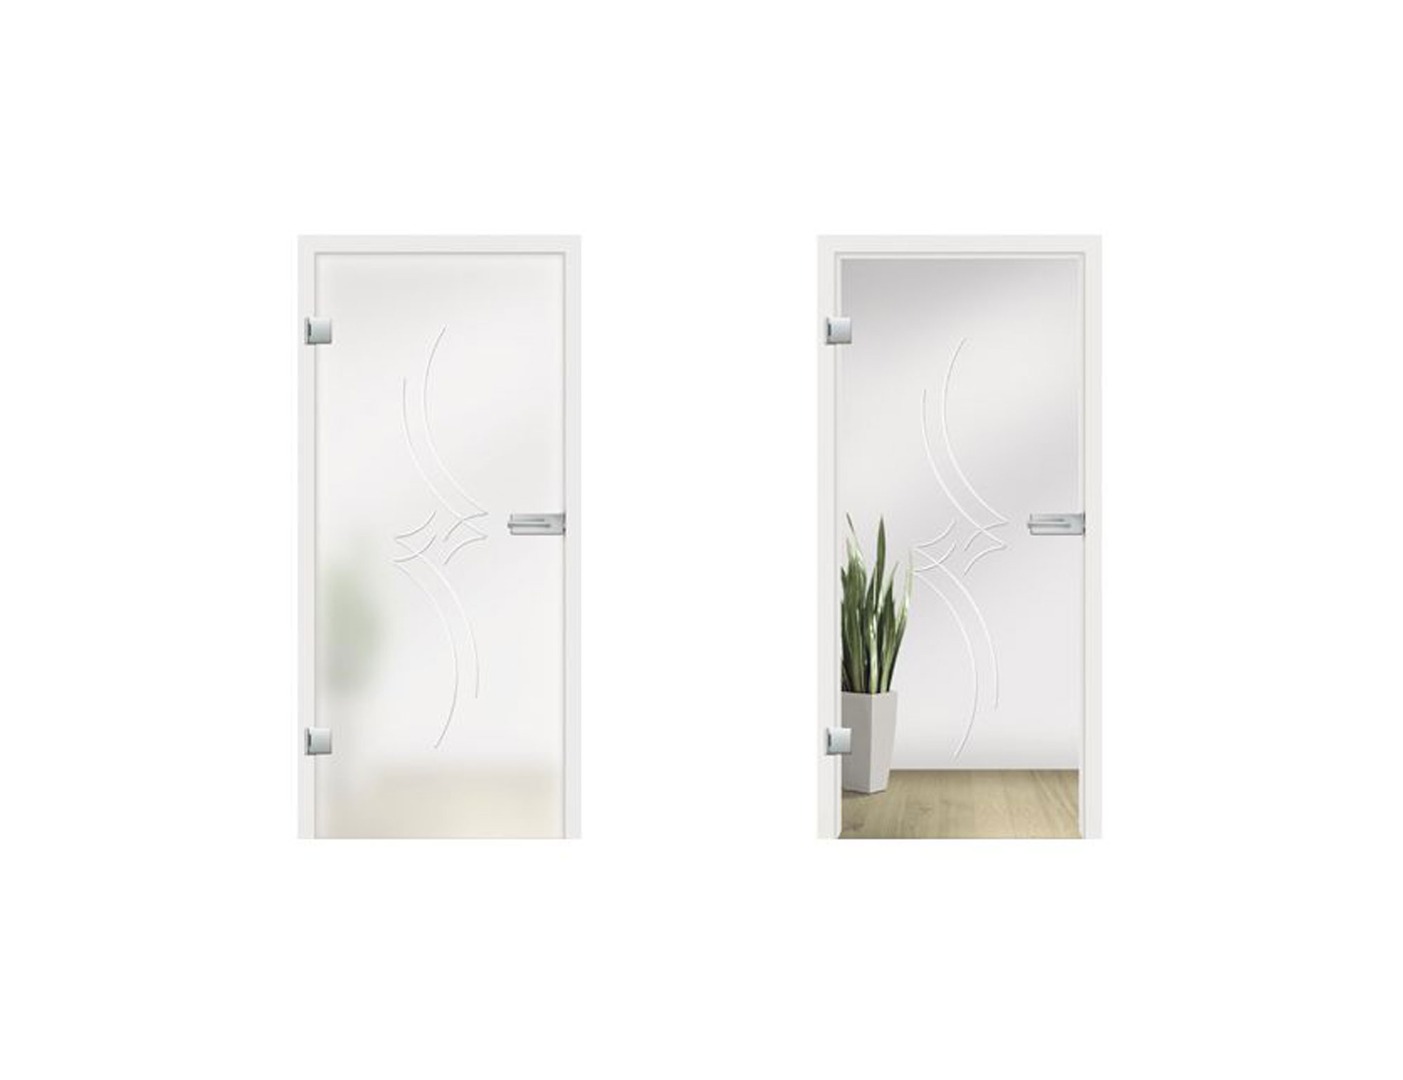 Romantica Grooved Glass Door Design - Glass Interior Doors